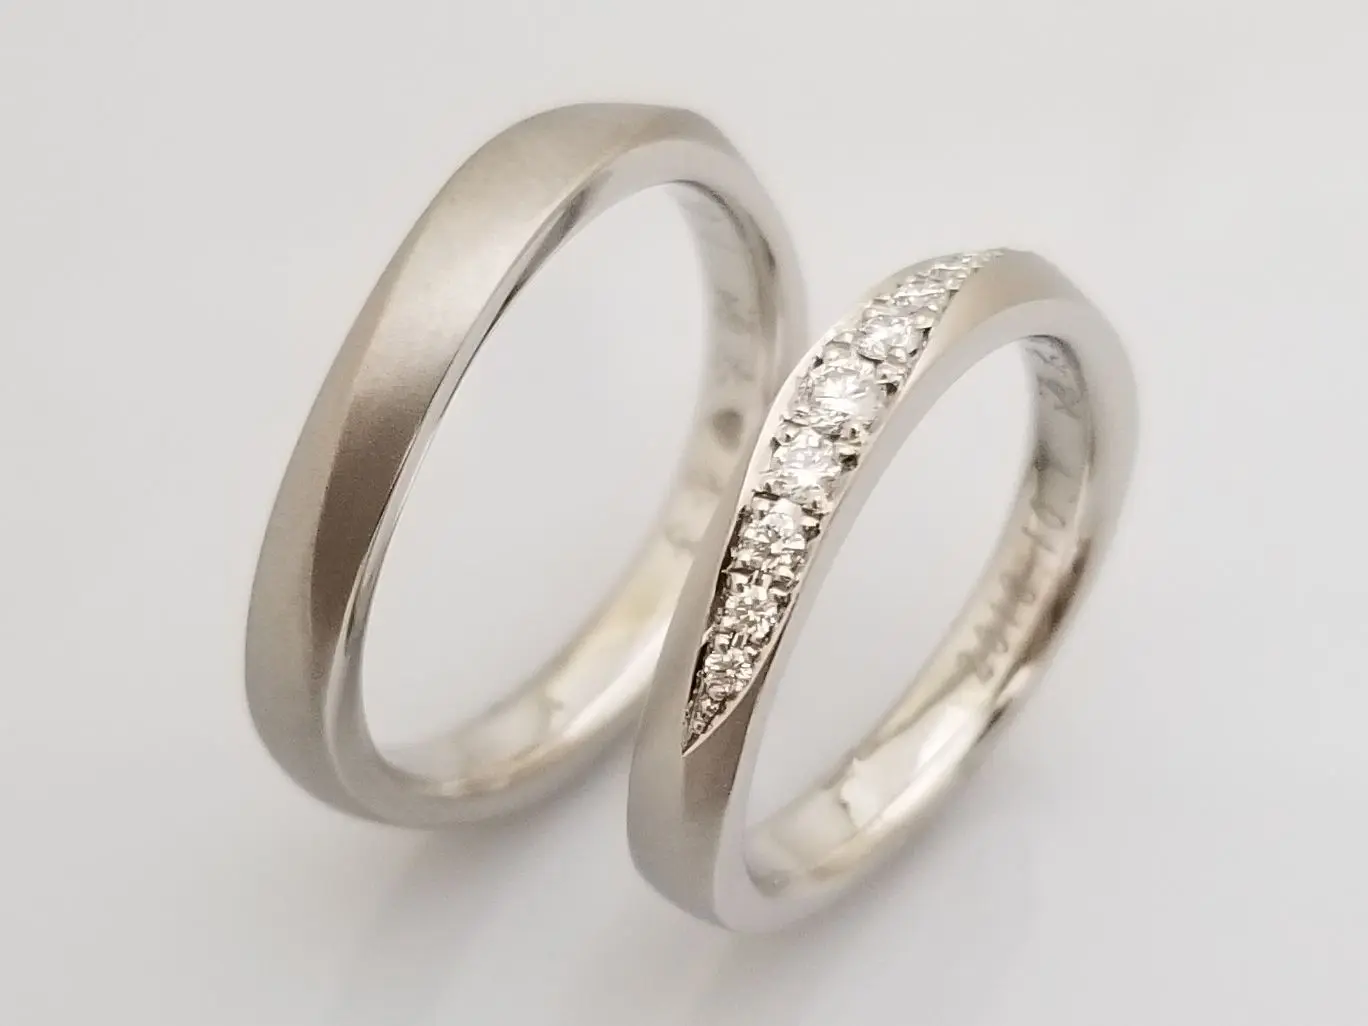 面取加工にダイヤを並べて、お揃いの結婚指輪に | 結婚・婚約指輪の 